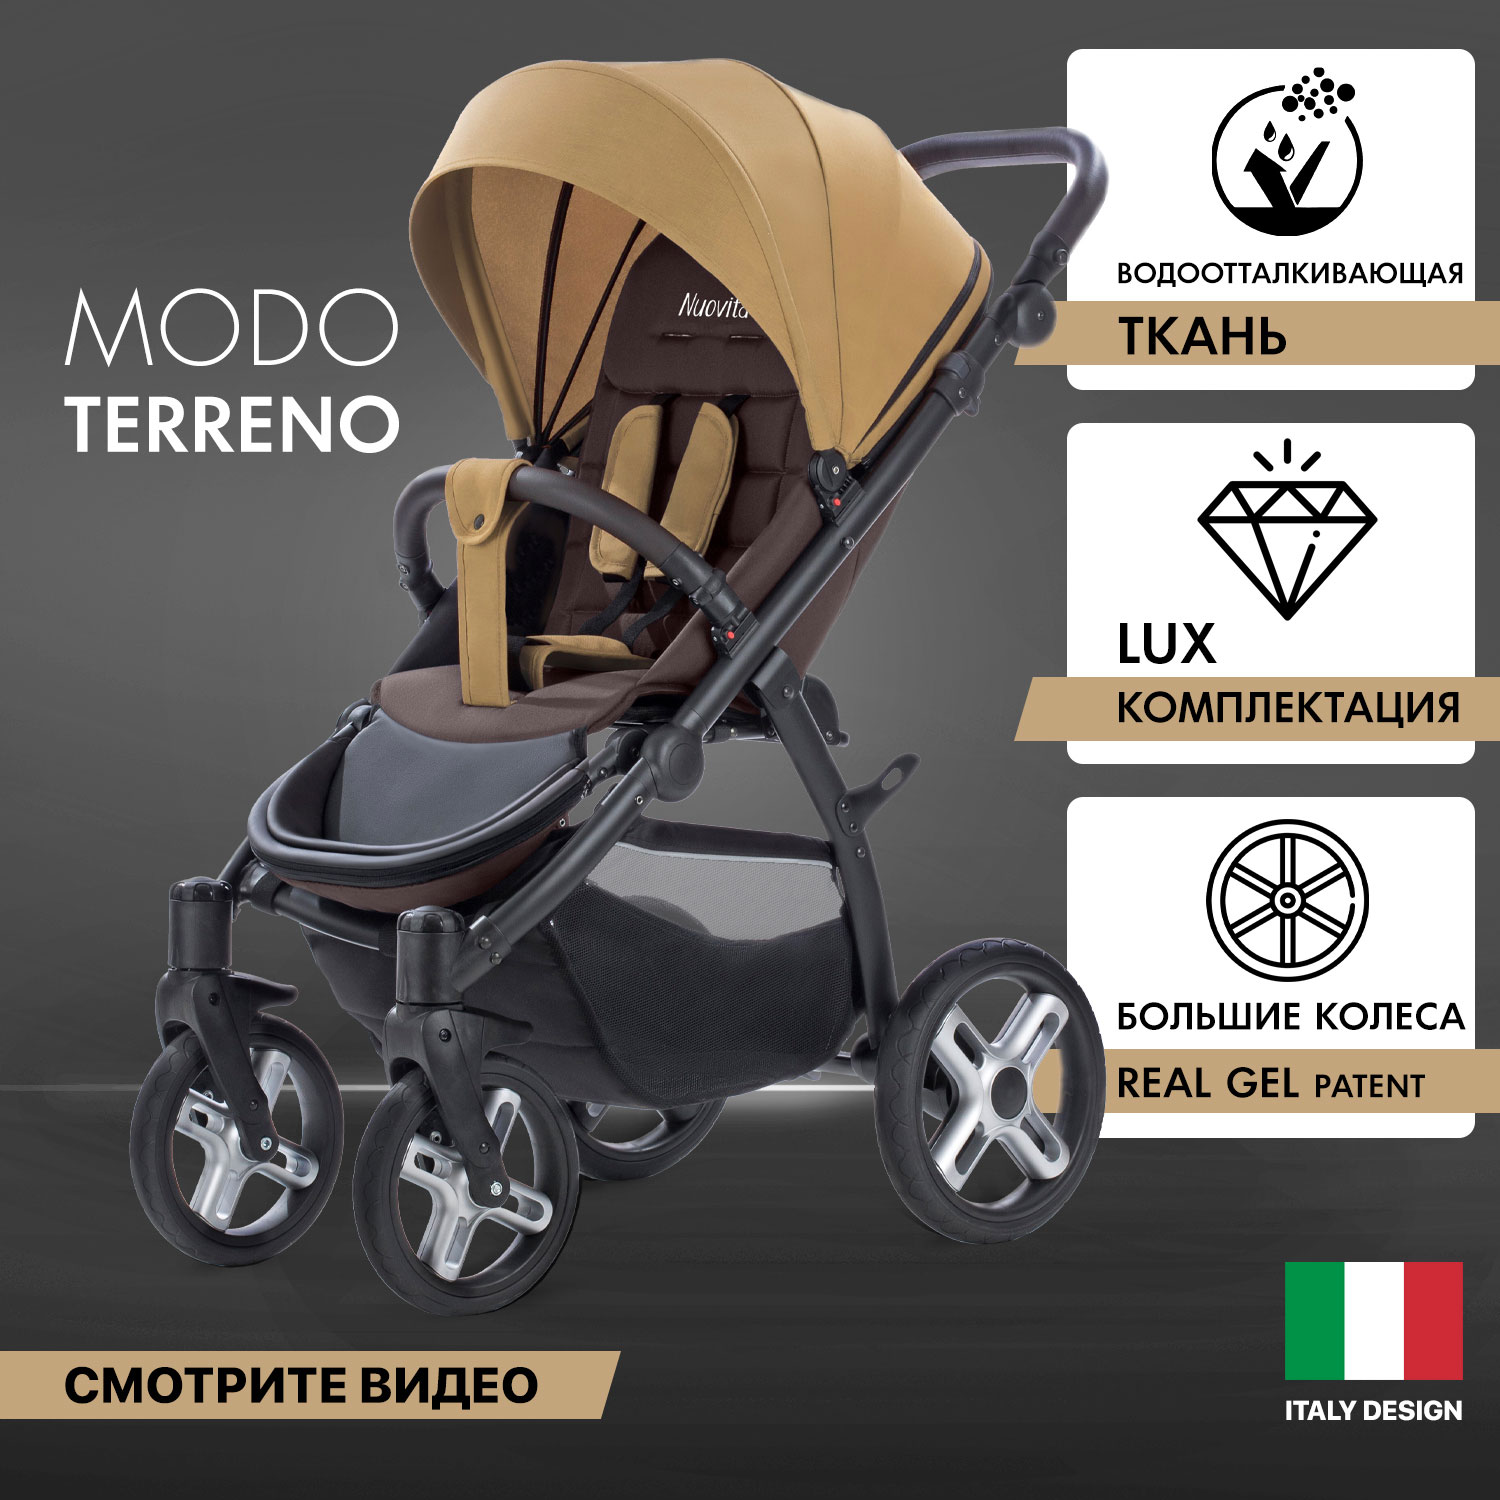 Прогулочная коляска Nuovita Modo Terreno Beige Marrone/Бежево-коричневый рюкзак nuovita capcap tour marrone коричневый